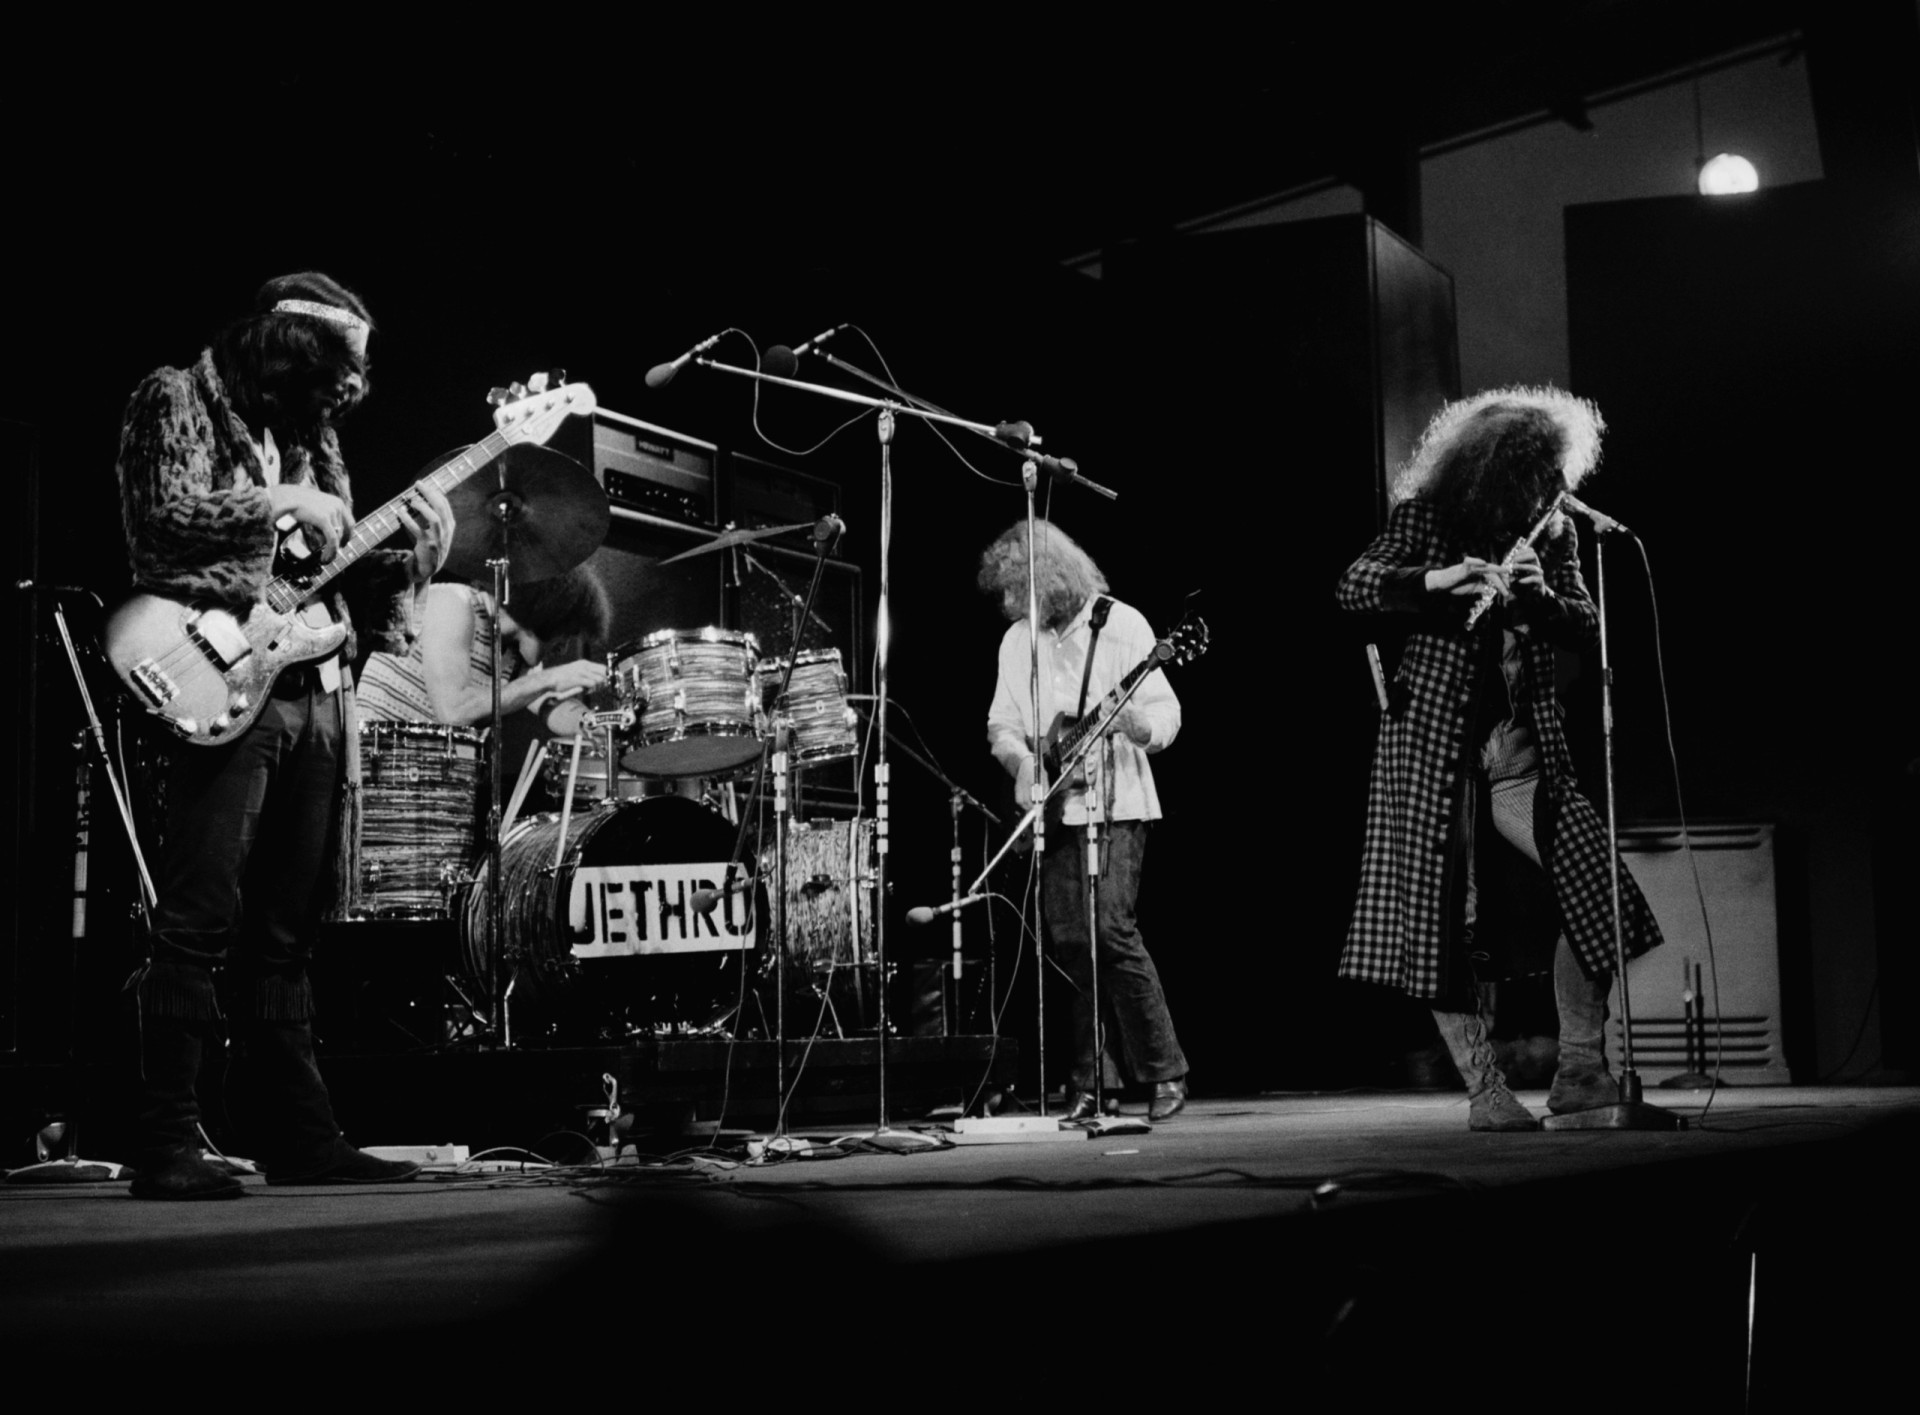 <p>Nur wenige verkörpern den Progrock-Musiker mehr als Ian Anderson von Jethro Tull. Der Multiinstrumentalist ist seit der Gründung der Band im Jahr 1967 ihr Frontmann. Mit "Stand Up" (1969) gelang Jethro Tull der Durchbruch. Andersons charakteristische Flöte untermauerte den eklektischen Folk-Rock-Soundtrack der Band.</p>